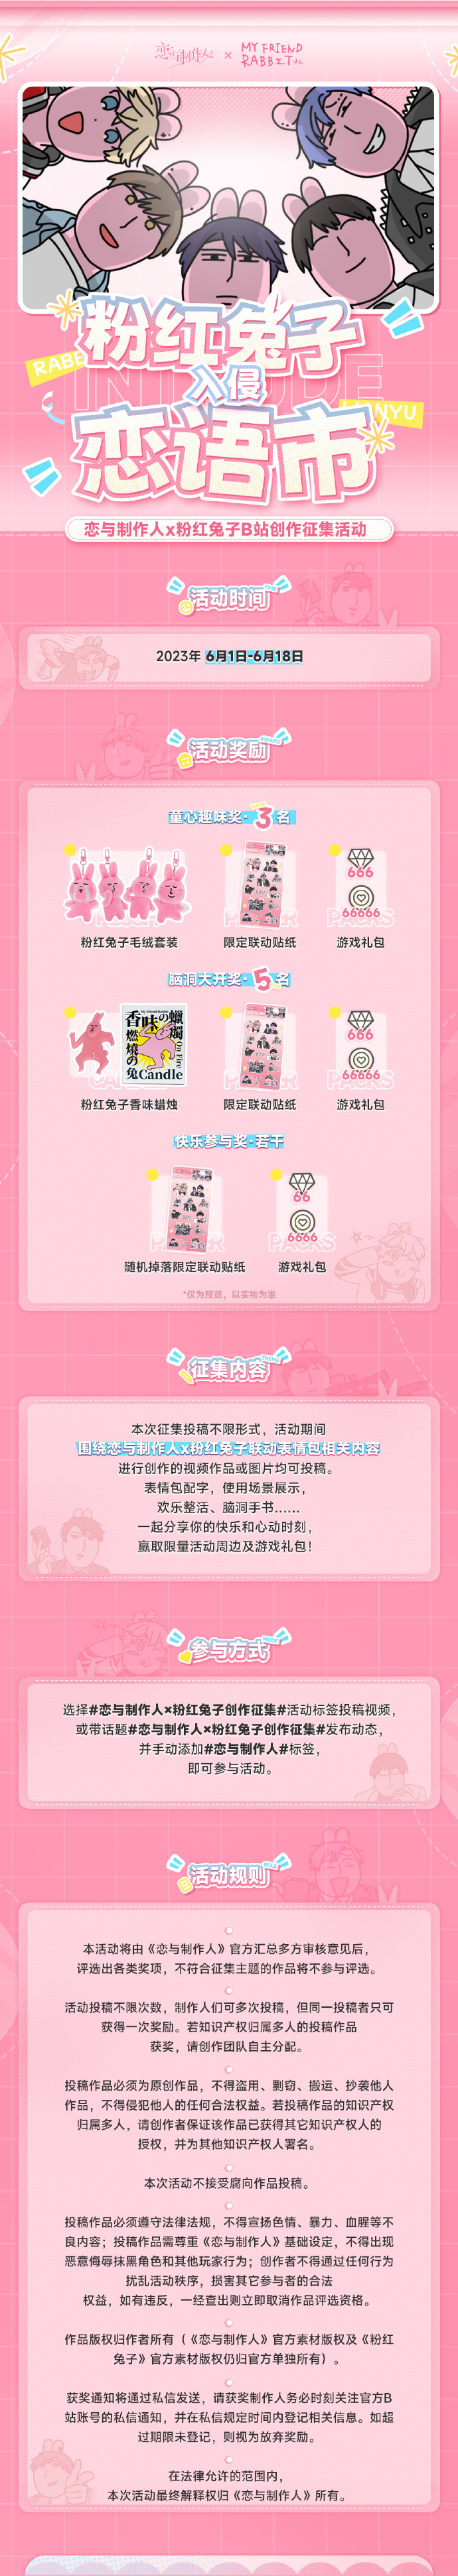 《恋与制作人》x 粉红兔子 表情包上线微信&QQ